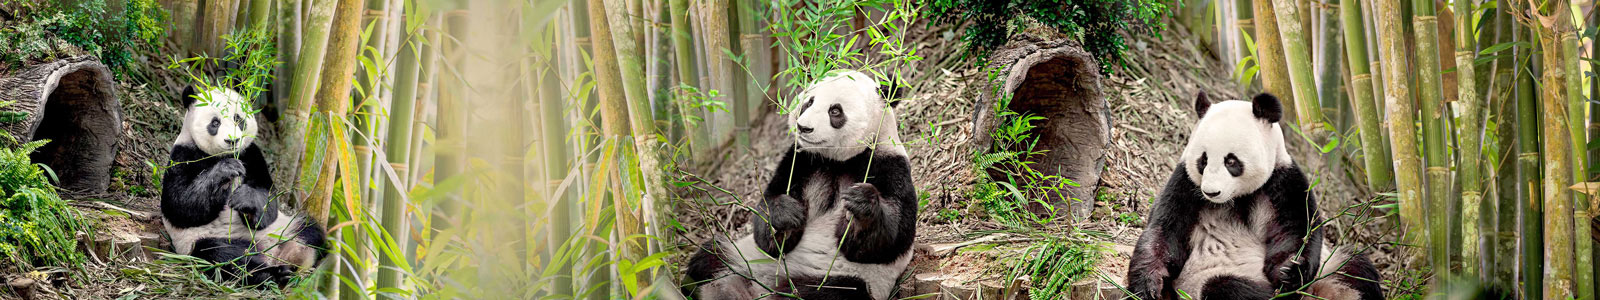 №4367 - Милые панды с веточками бамбука